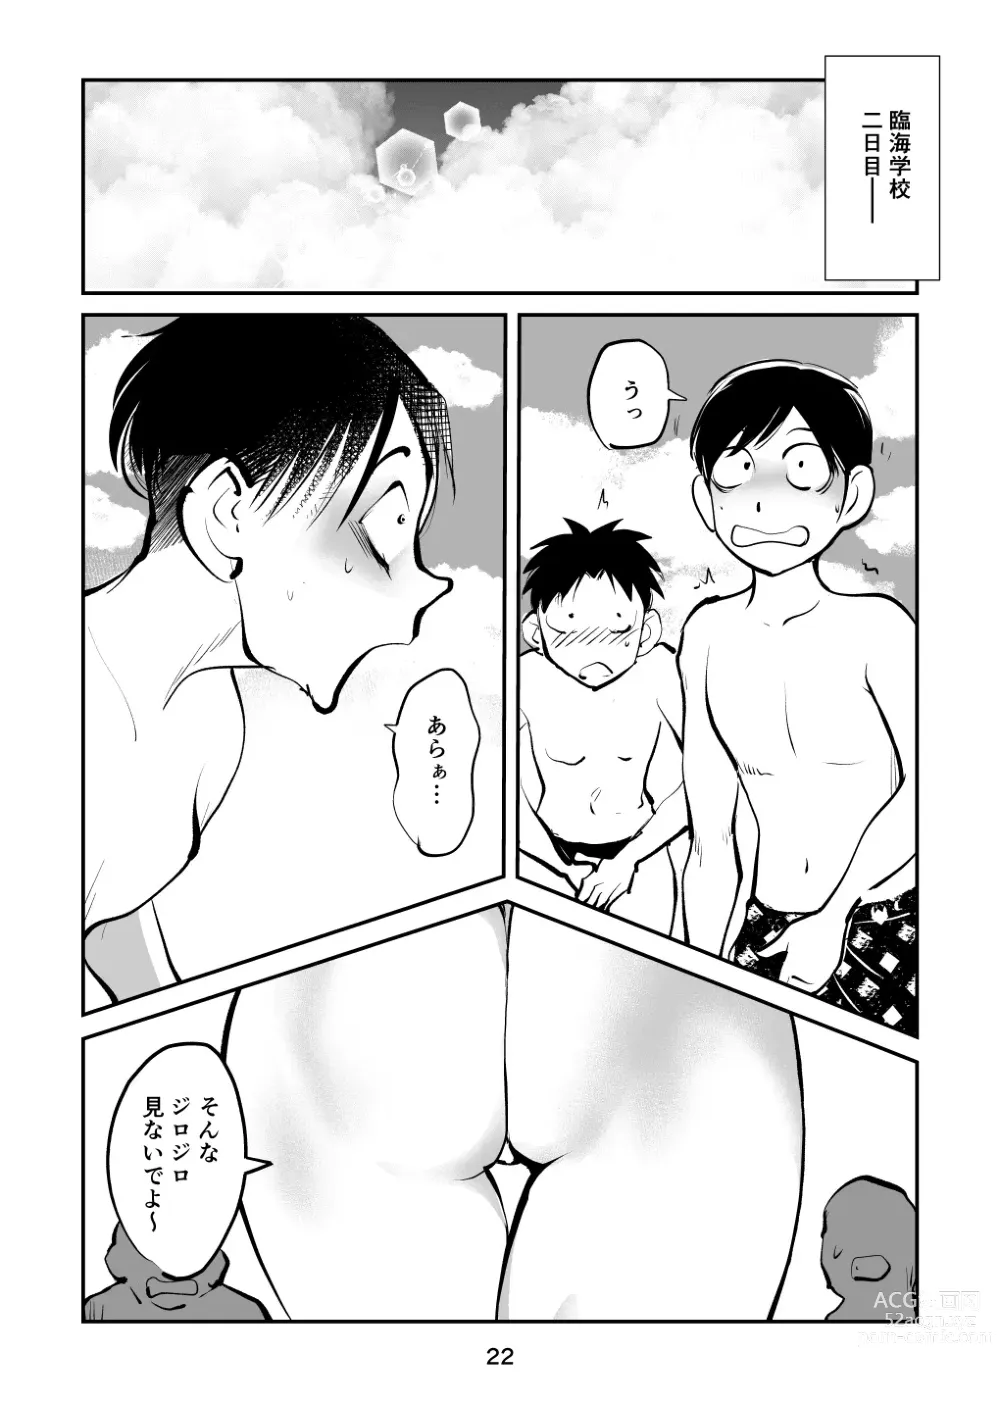 Page 22 of doujinshi Chinpo Shiikukakari 7